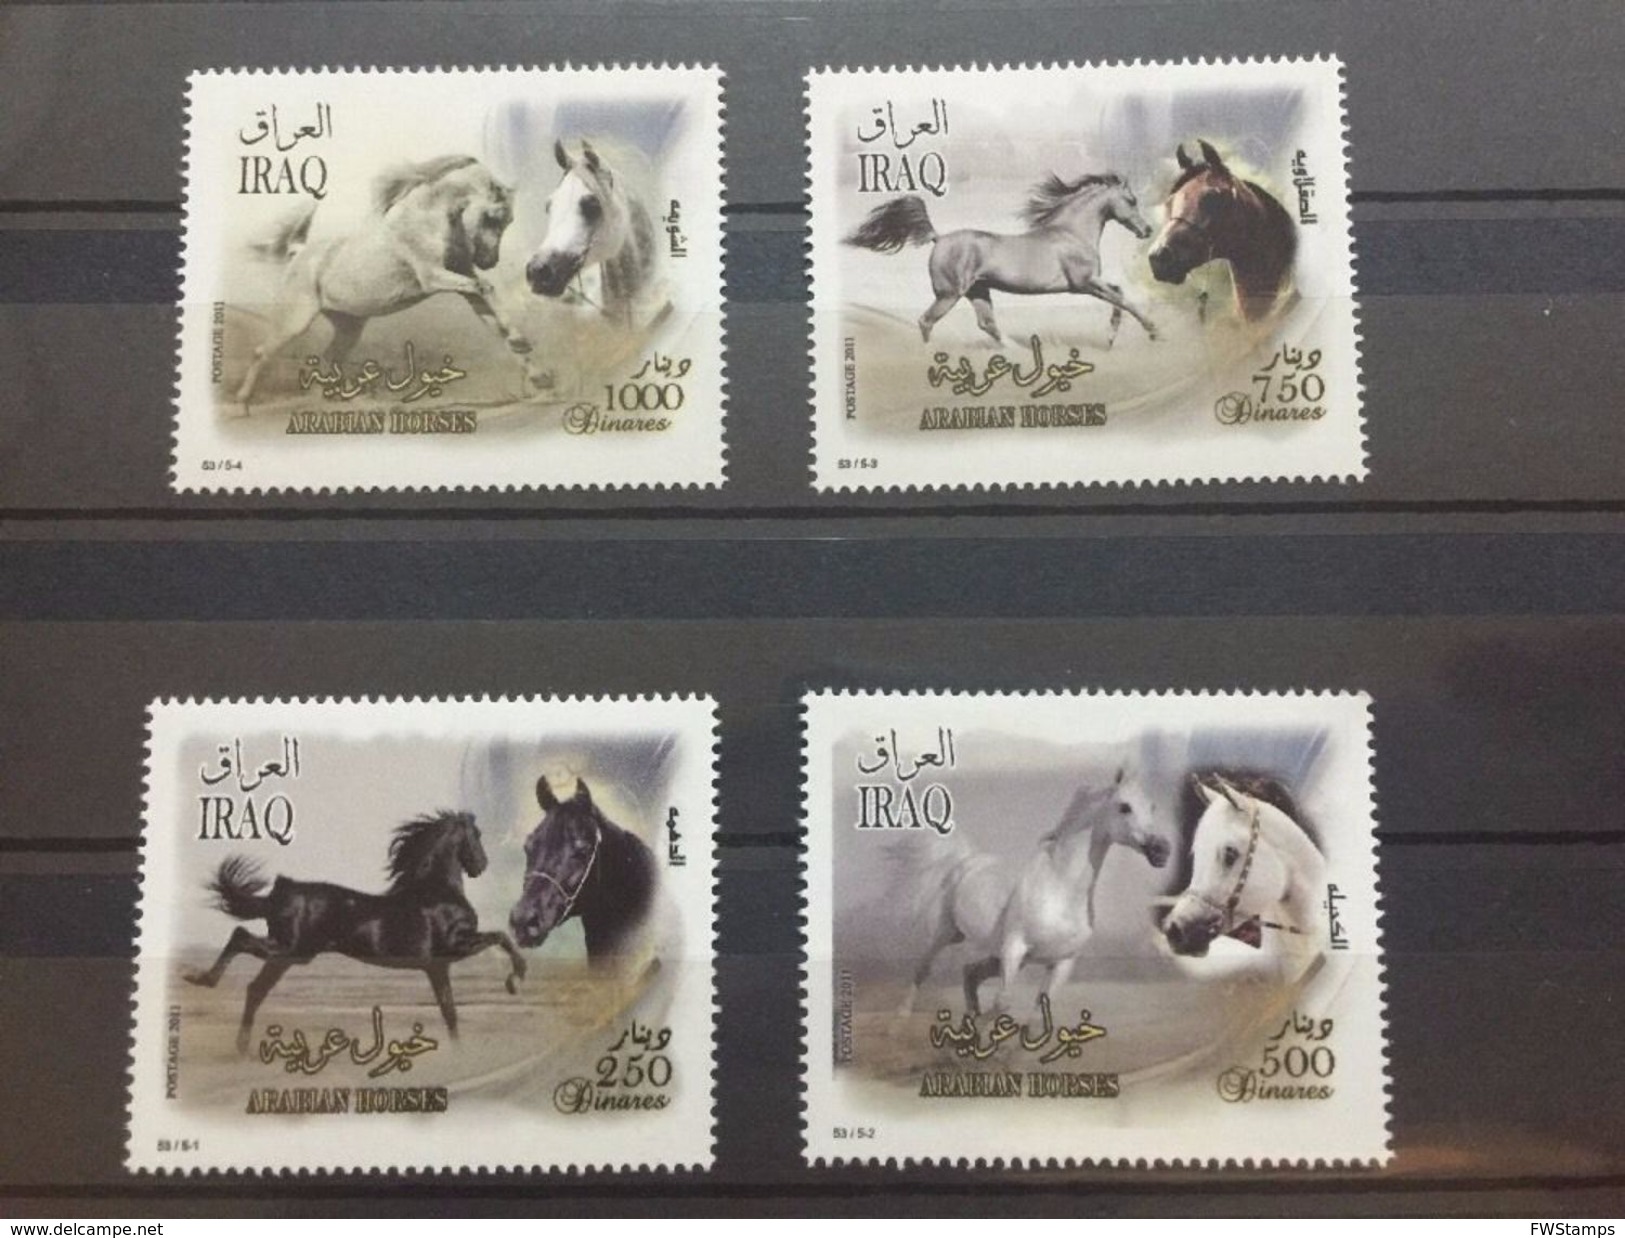 Iraq Arabian Horses Stamps 2011 MNH - Iraq